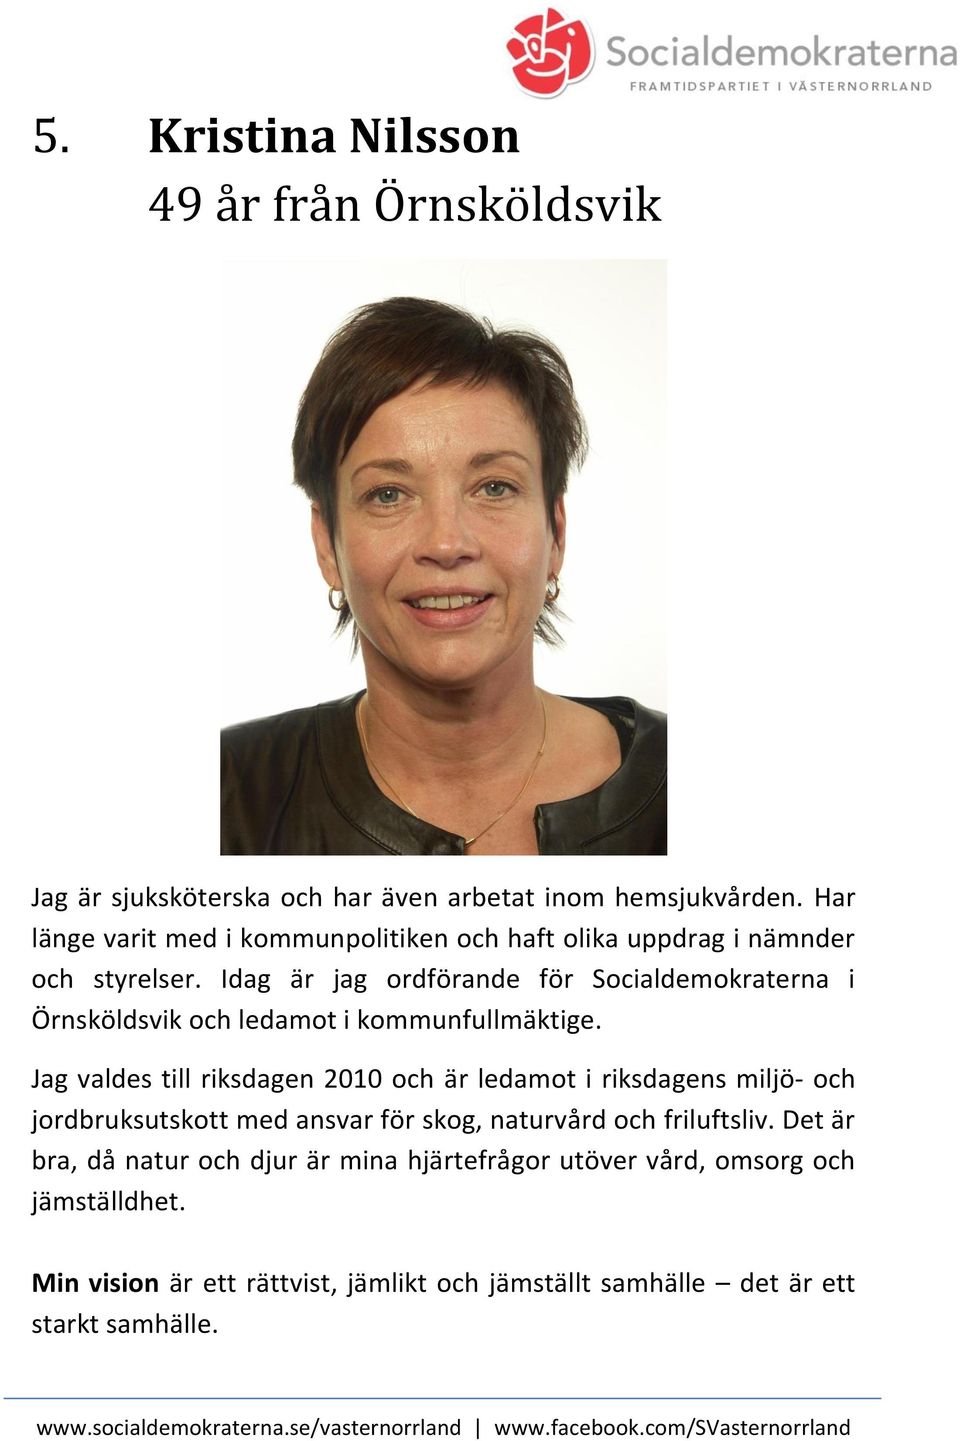 Idag är jag ordförande för Socialdemokraterna i Örnsköldsvik och ledamot i kommunfullmäktige.